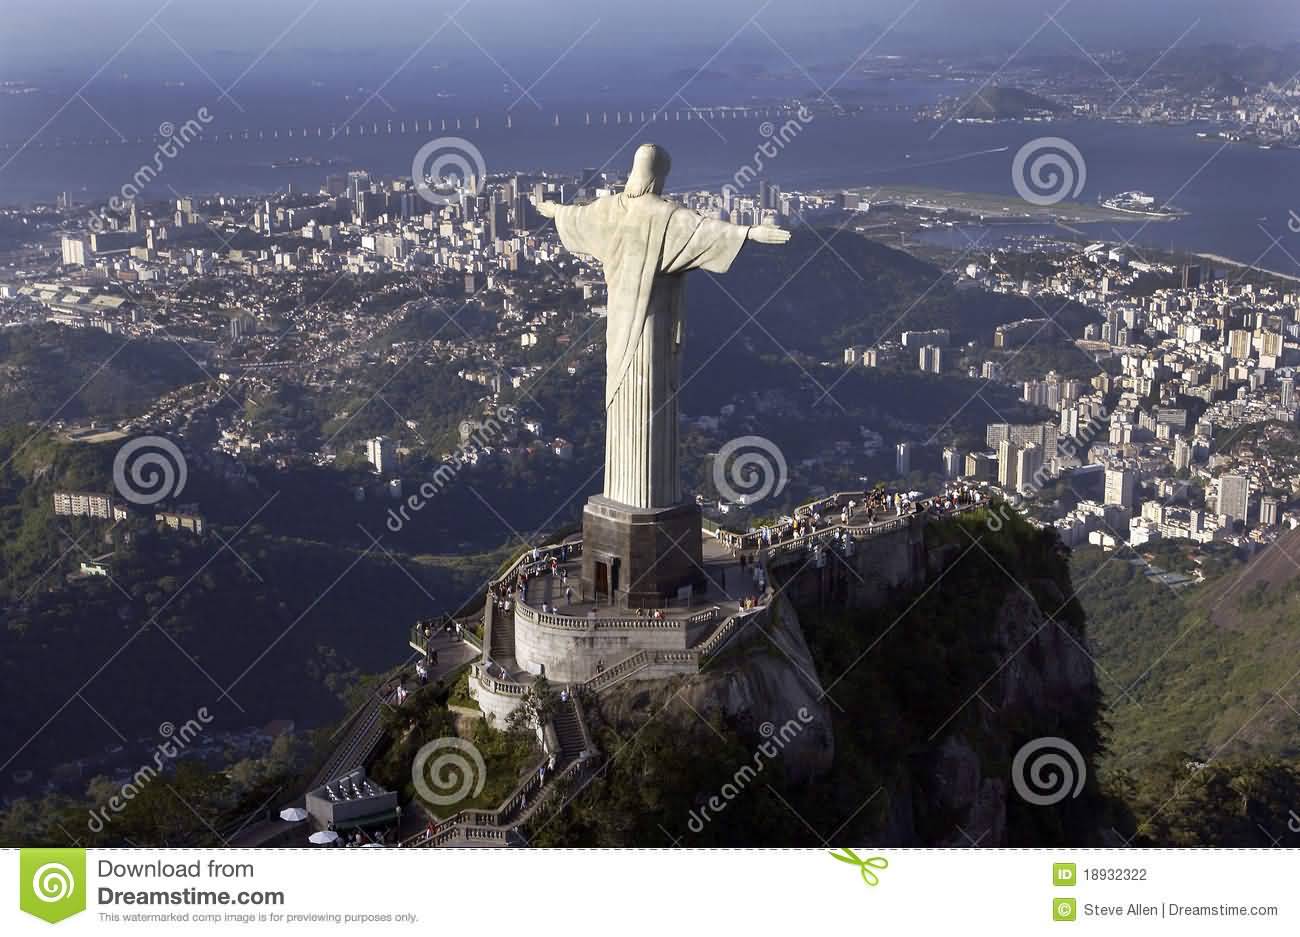 Christ The Redeemer In Rio de Janeiro, Brazil